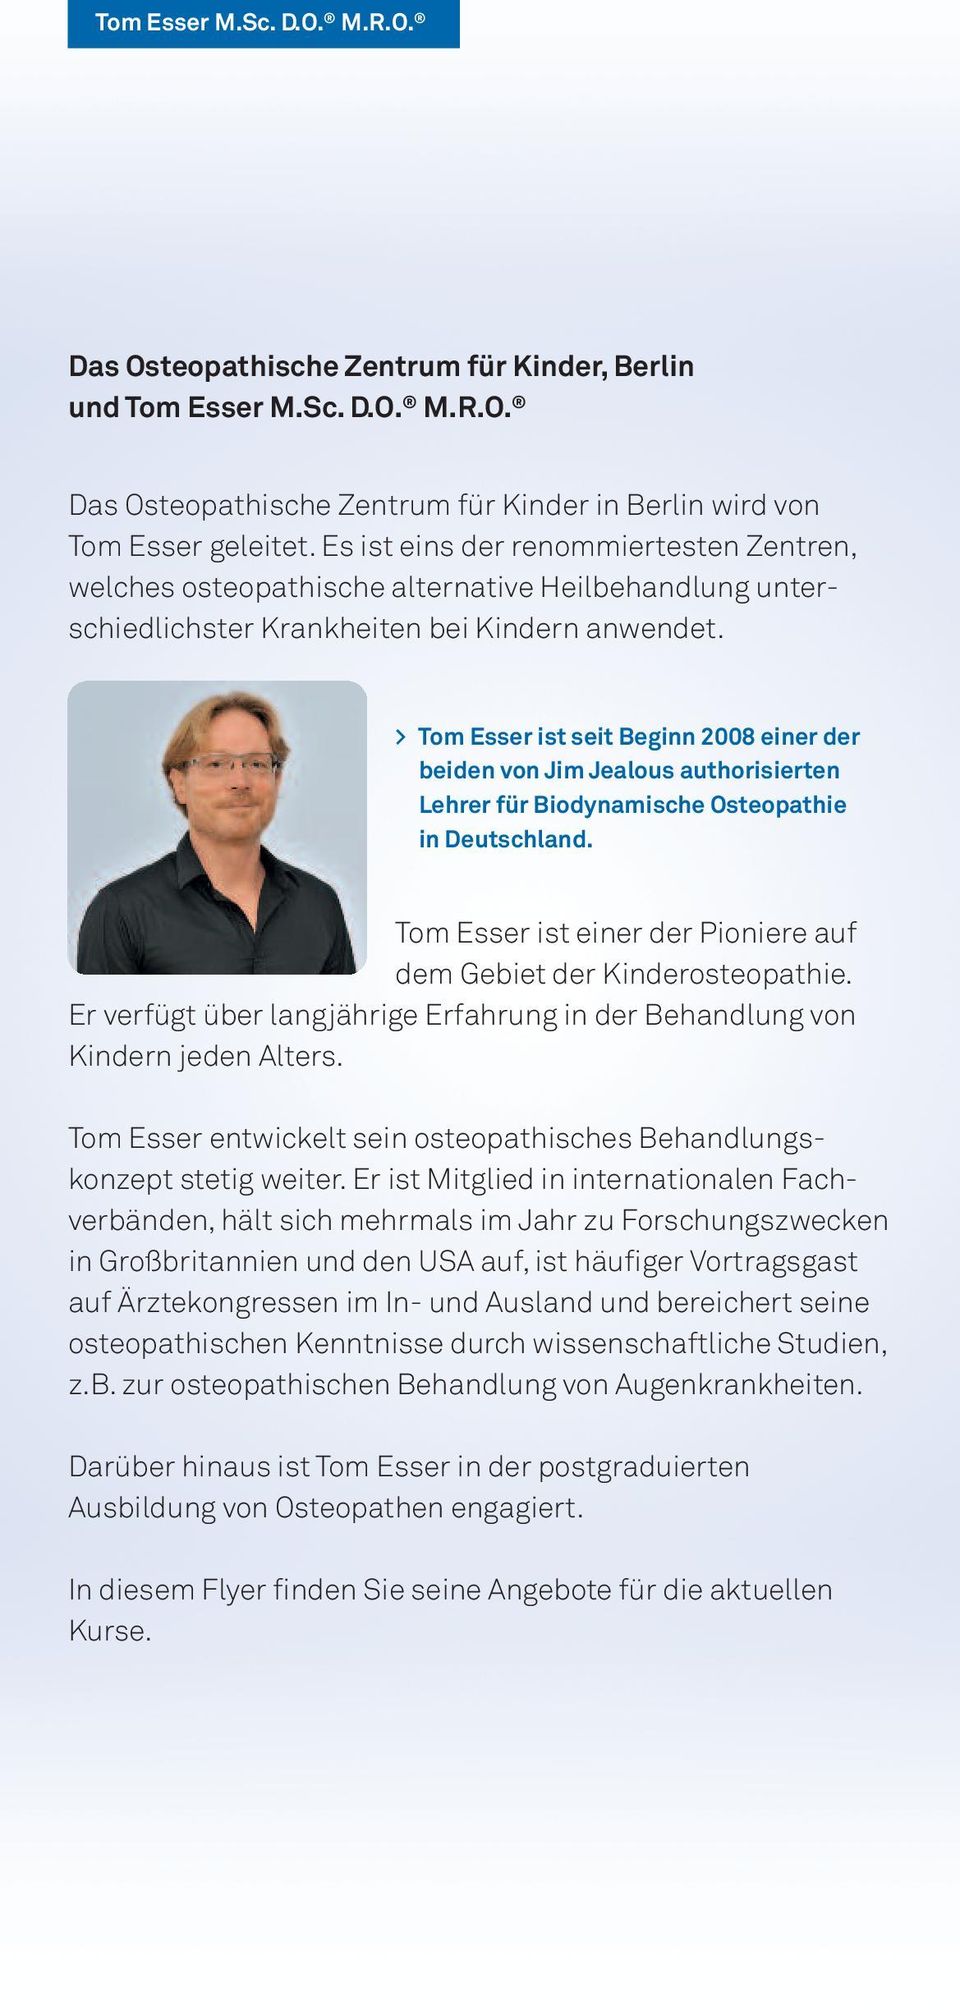 > Tom Esser ist seit Beginn 2008 einer der beiden von Jim Jealous authorisierten Lehrer für Biodynamische Osteopathie in Deutschland.